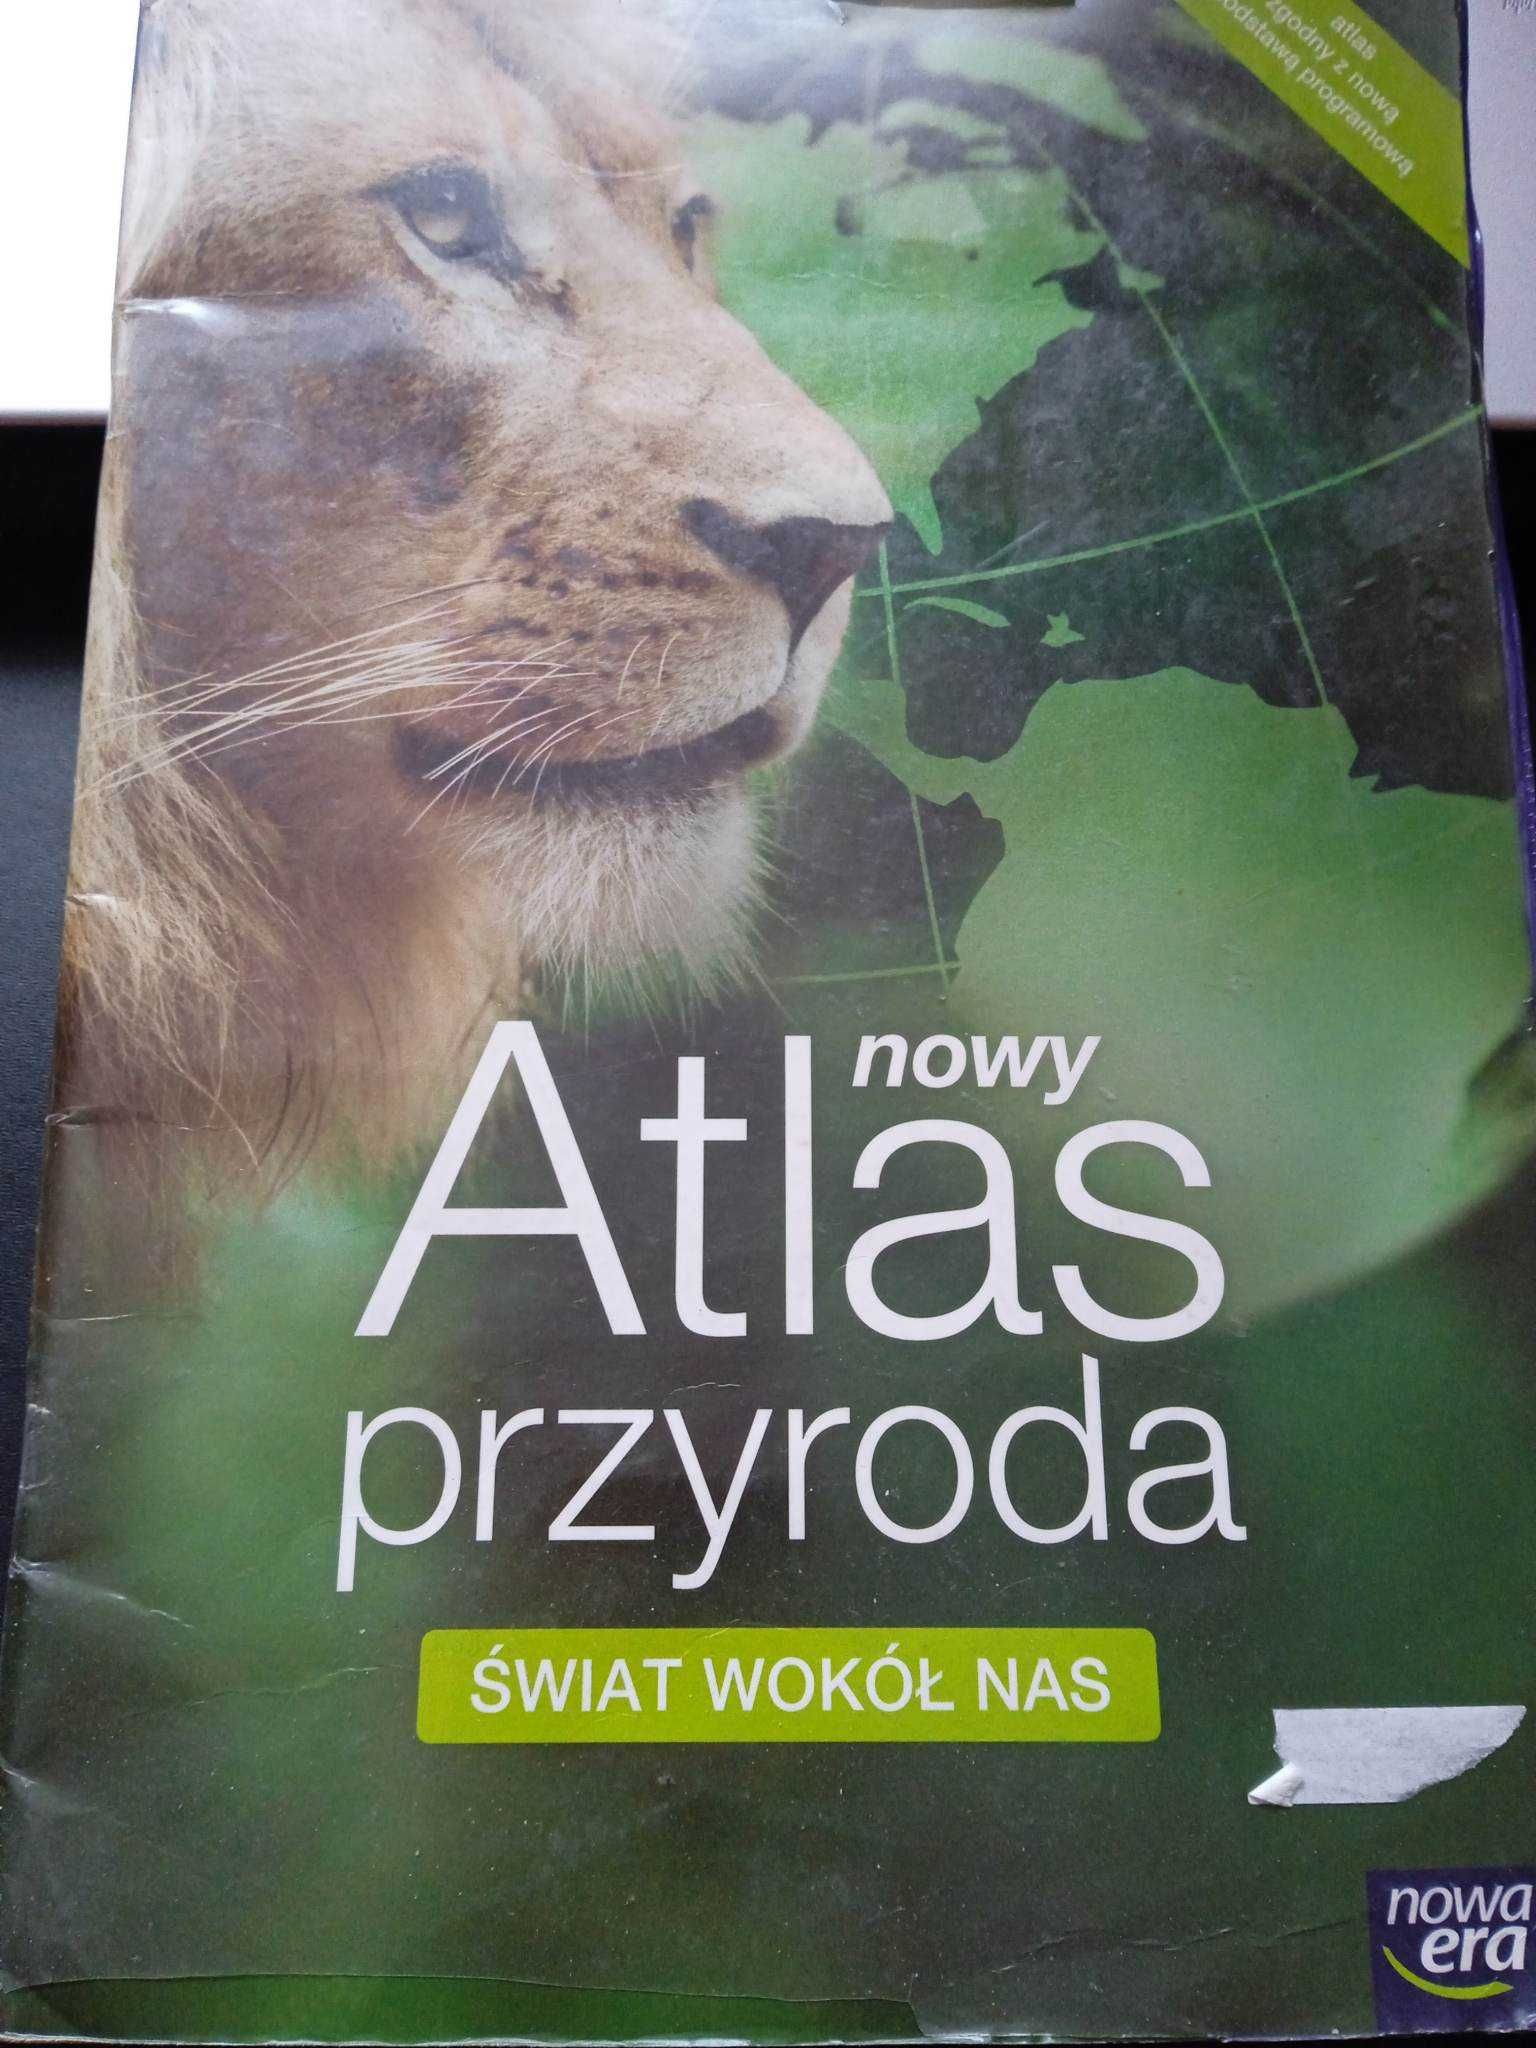 nowy Atlas przyroda "Świat wokół nas"